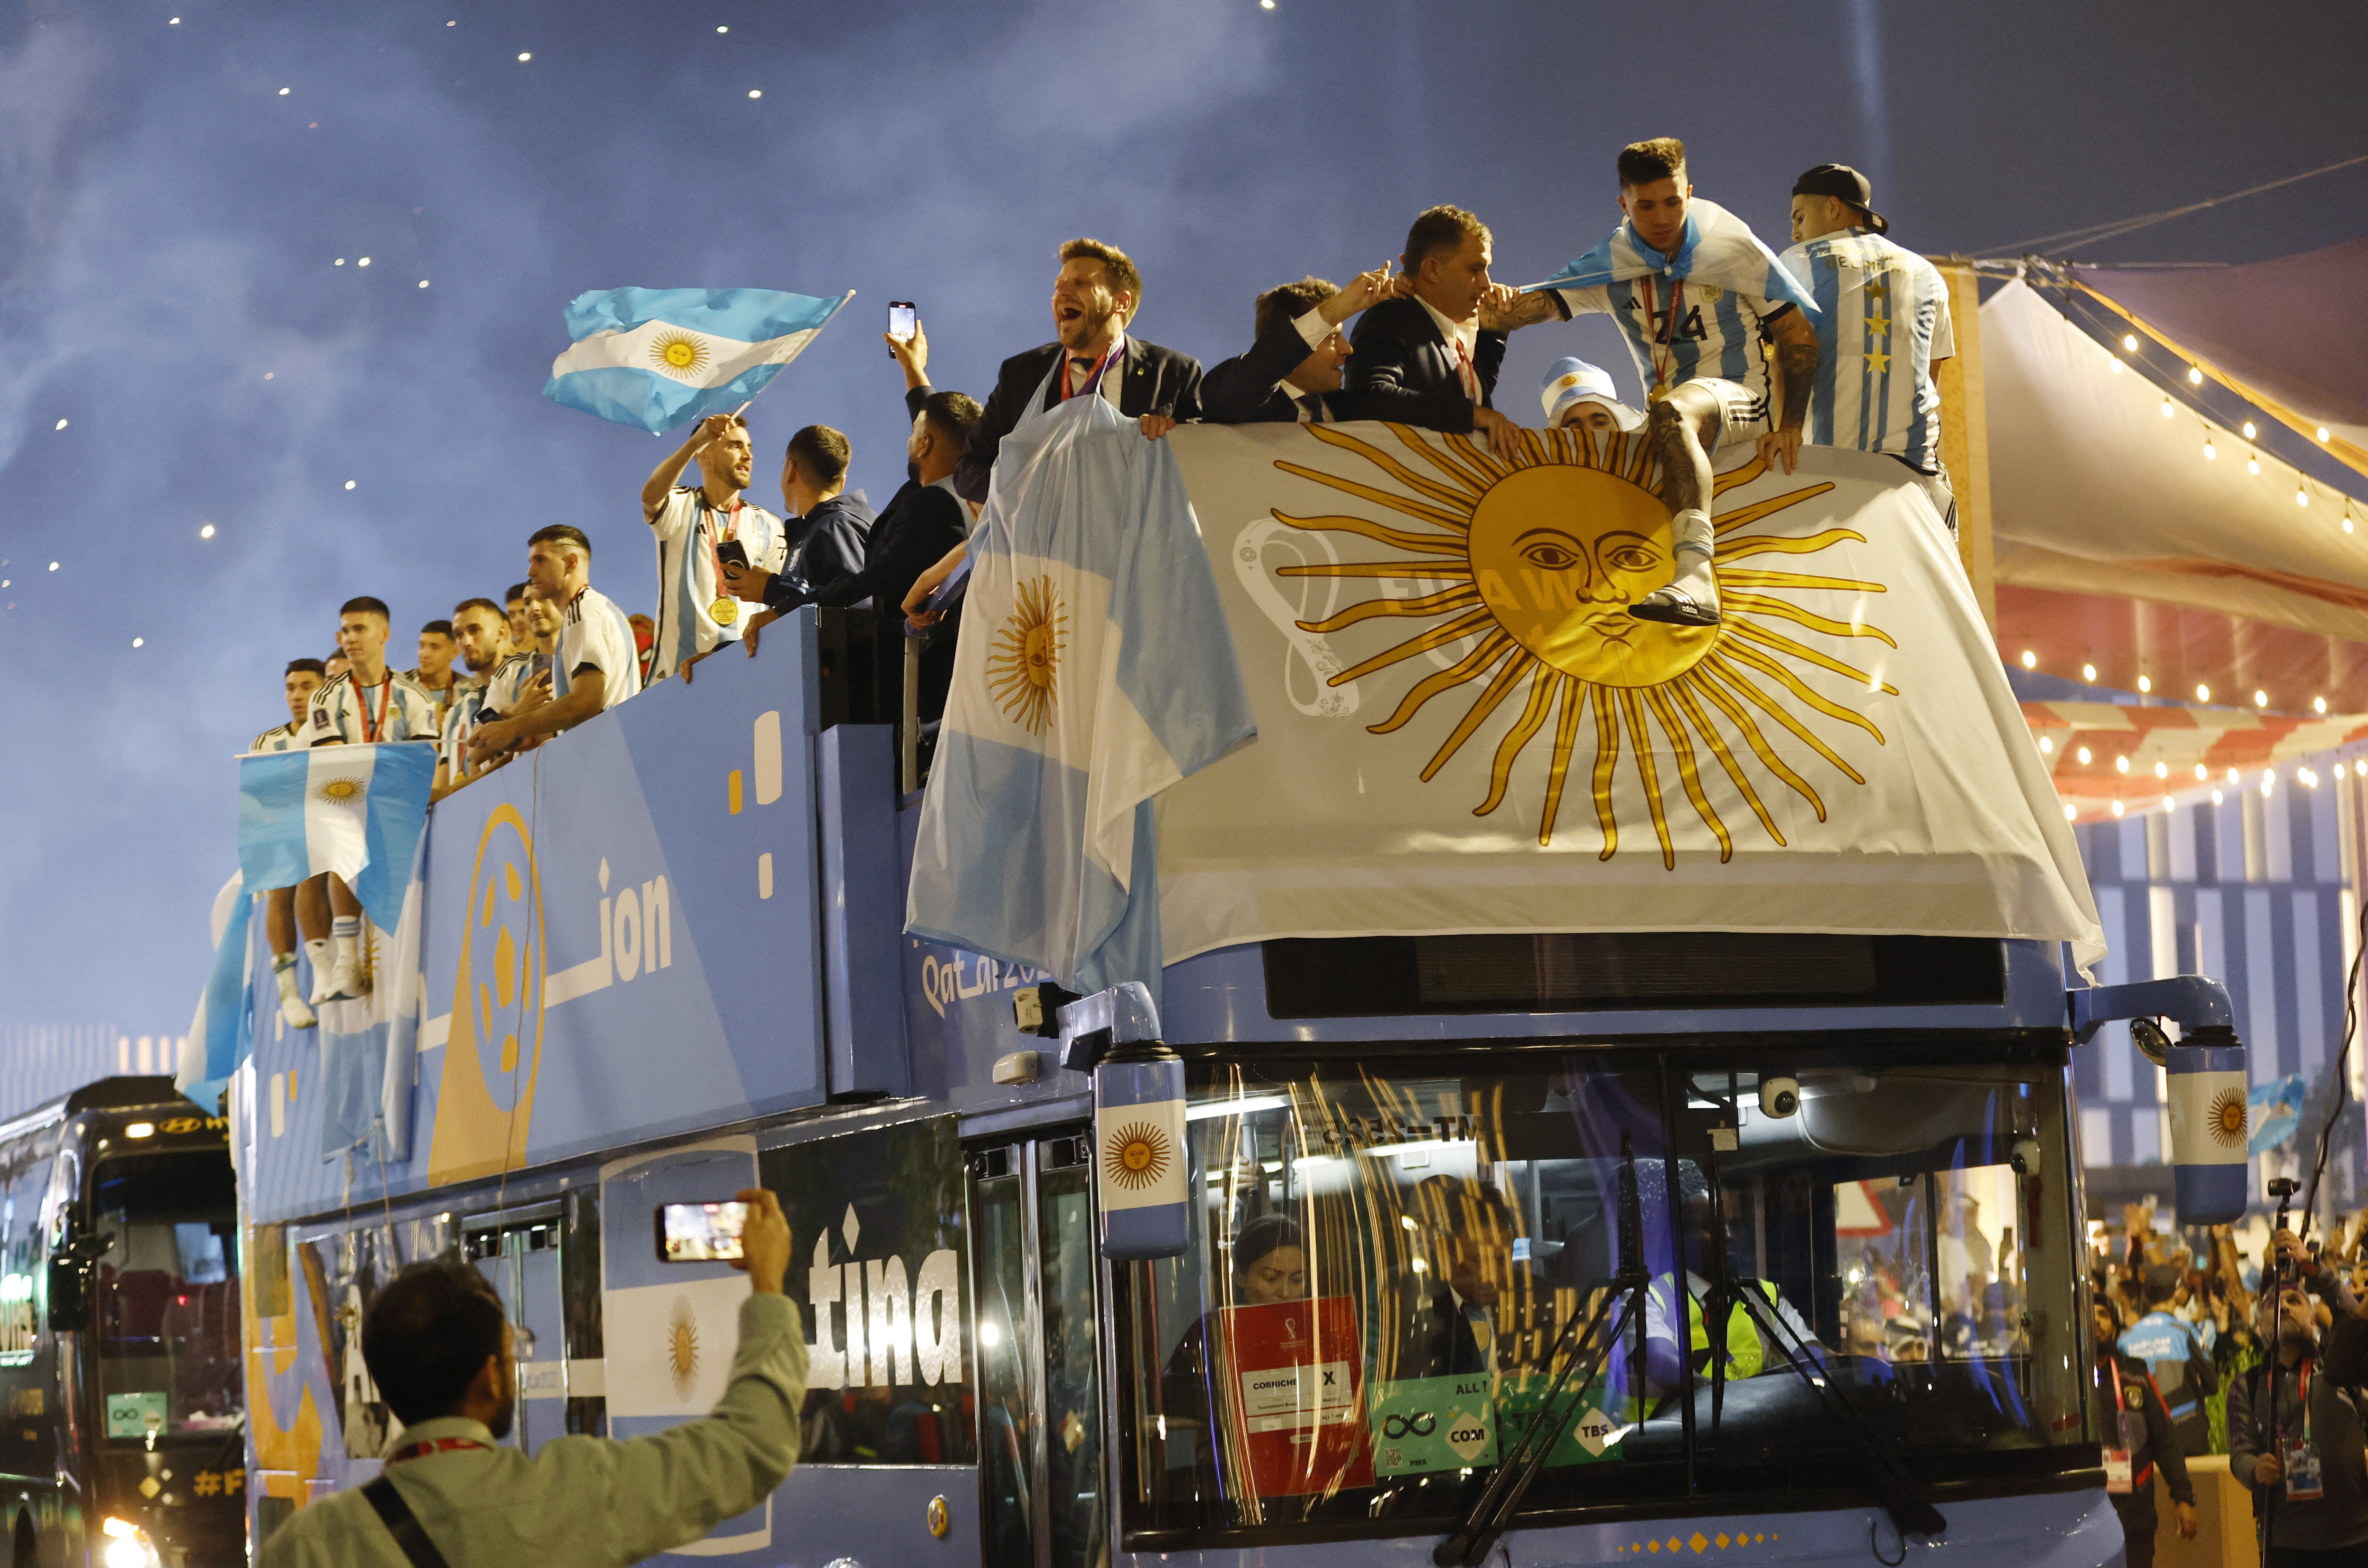 Después de ganar la Copa todo el plantel subió al bus decorado con los colores argentinos para recorrer las calles con simpatizantes que se mezclaban con los locales para saludar a los ganadores 